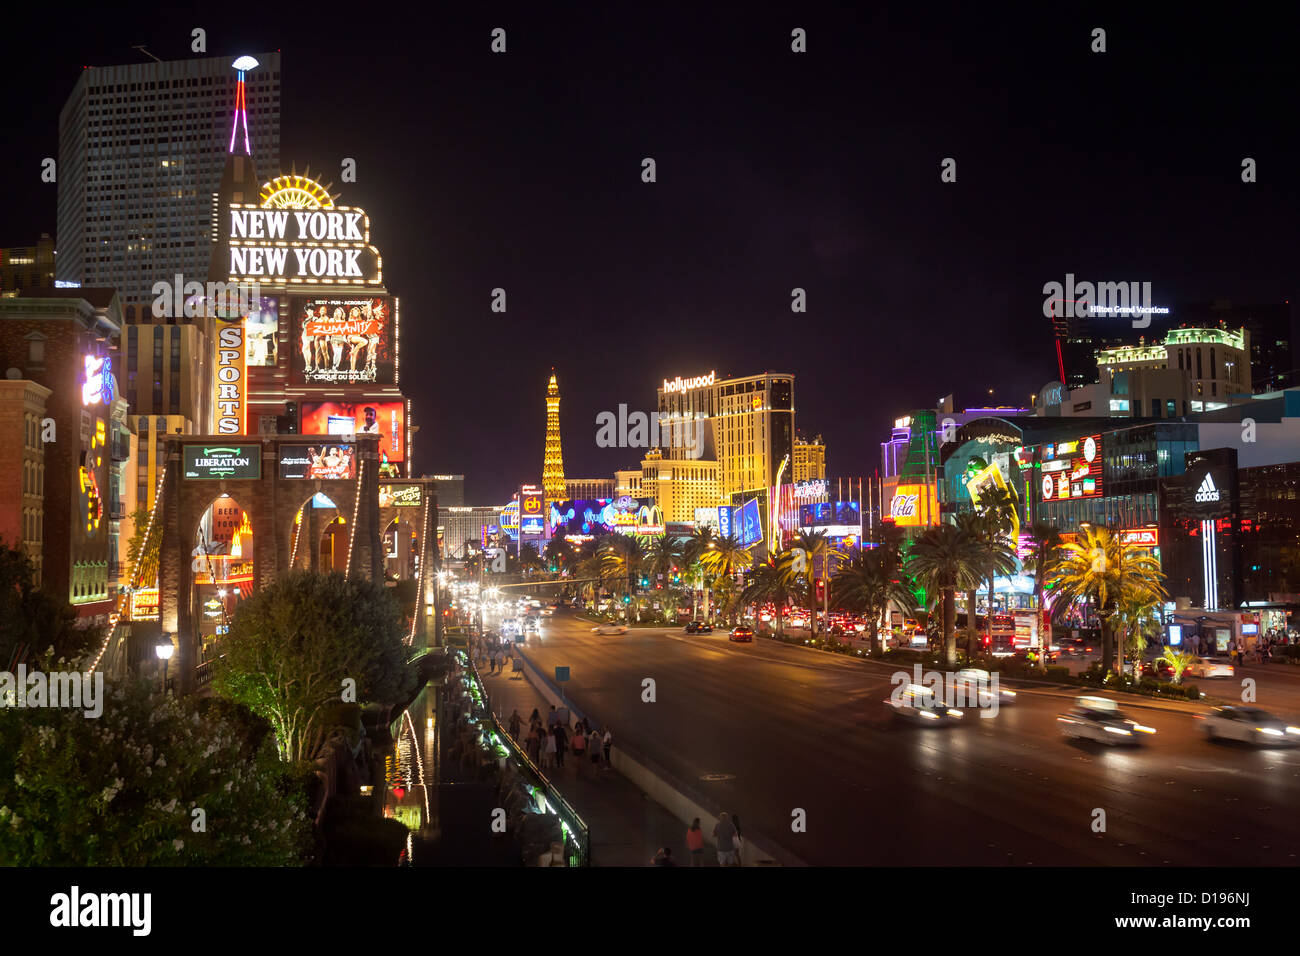 People walking at nighttime on Las Vegas Blvd. in Las Vegas, Nevada. Stock Photo